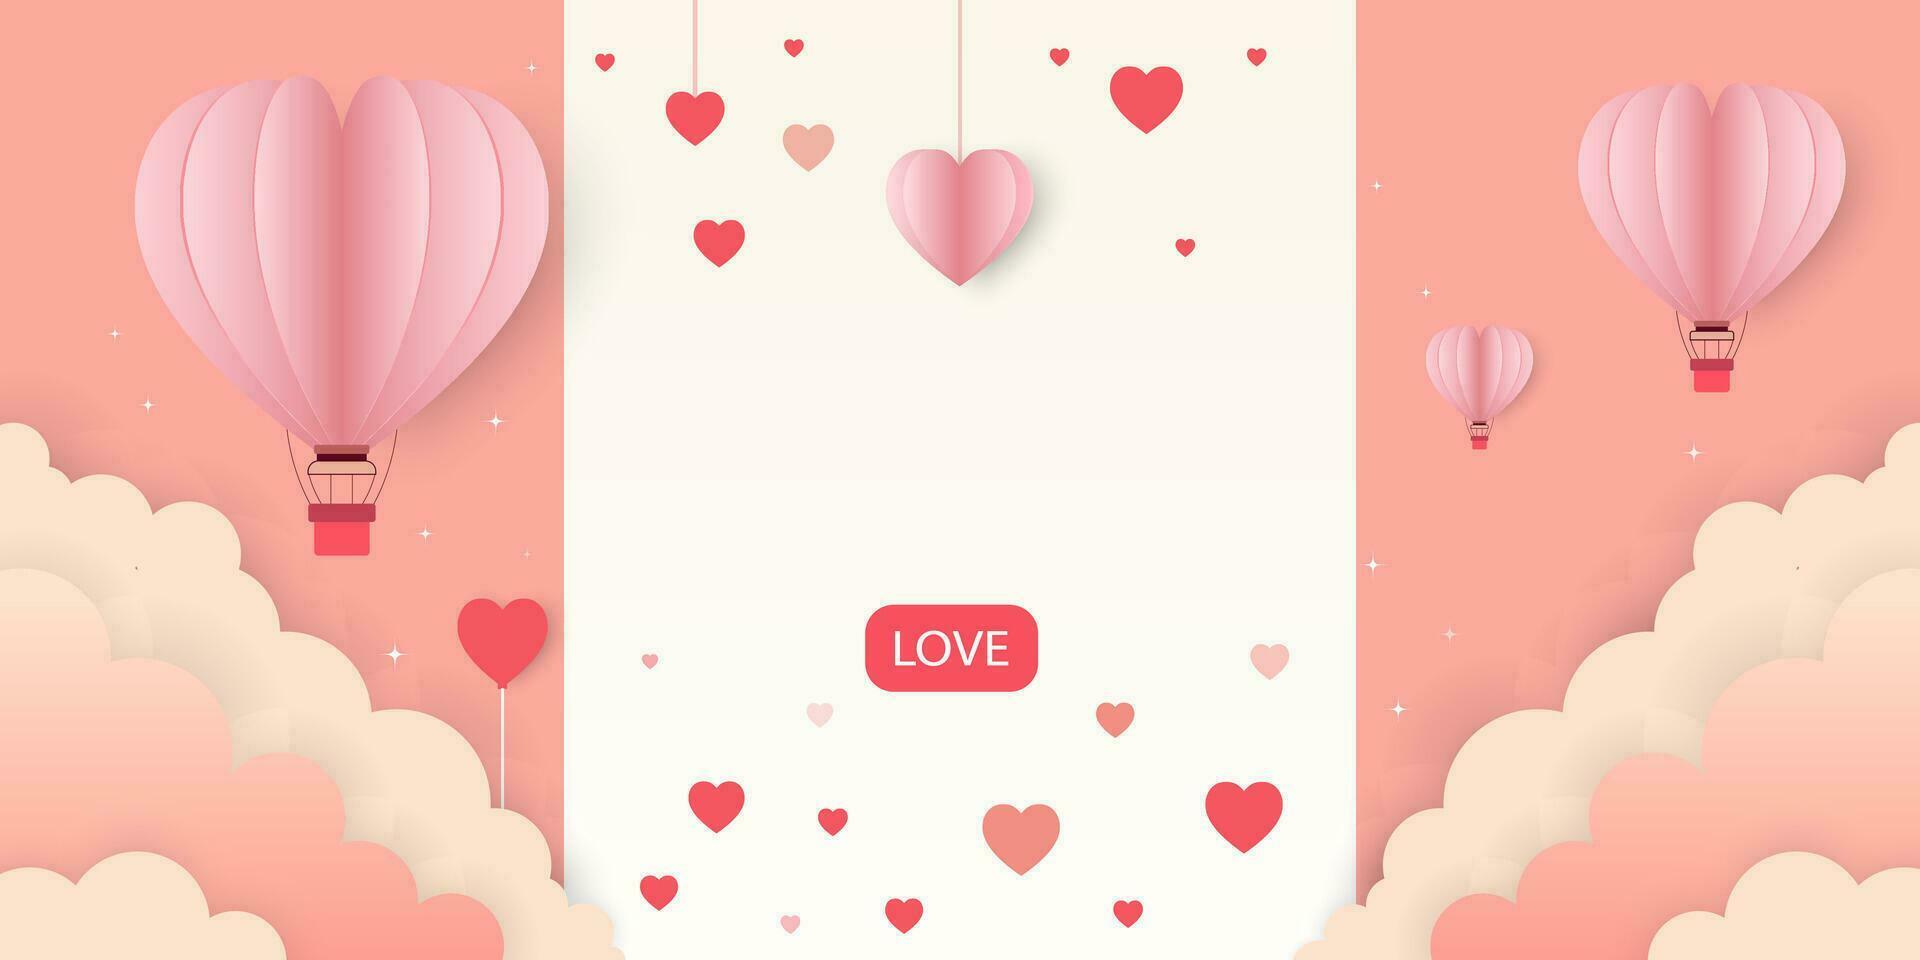 roze achtergrond met rood harten, wolken, heet lucht ballonnen, hart ballonnen en papier harten ,voor Valentijnsdag dag verkoop spandoeken, affiches of Valentijn kaart, liefde achtergrond, vector illustratie